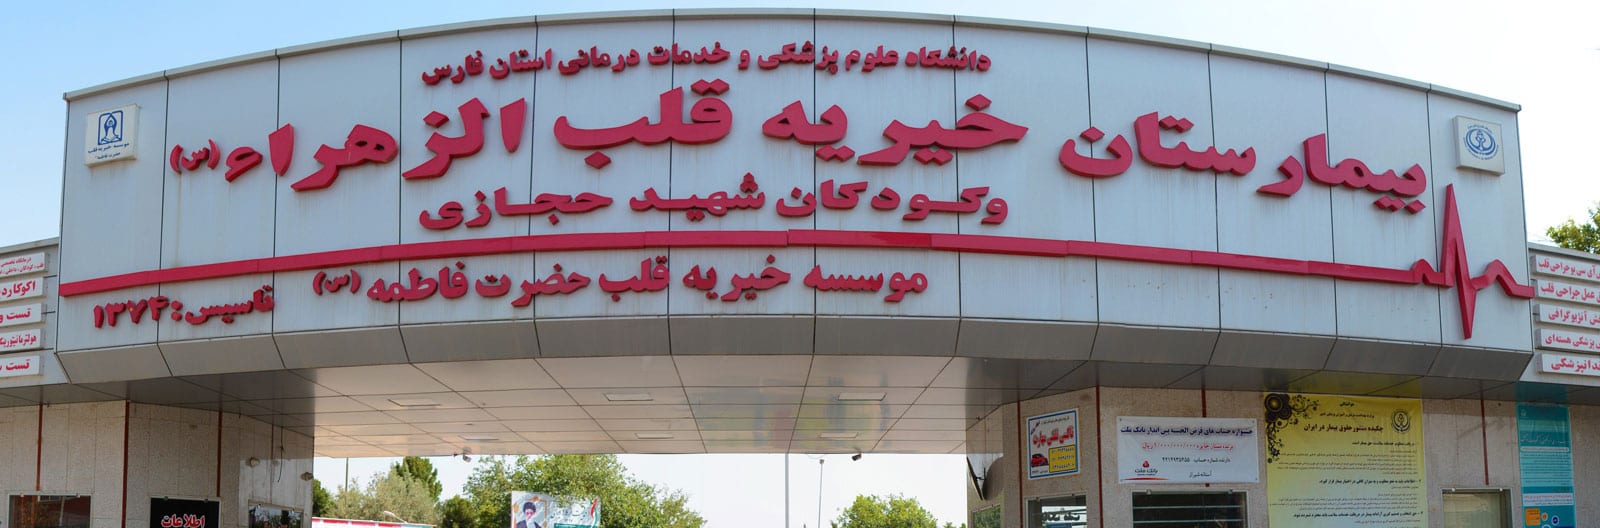 https://alferdousco.com/wp-content/uploads/2021/07/Alzahraa-Hospital-Shiraz_Iran.jpg